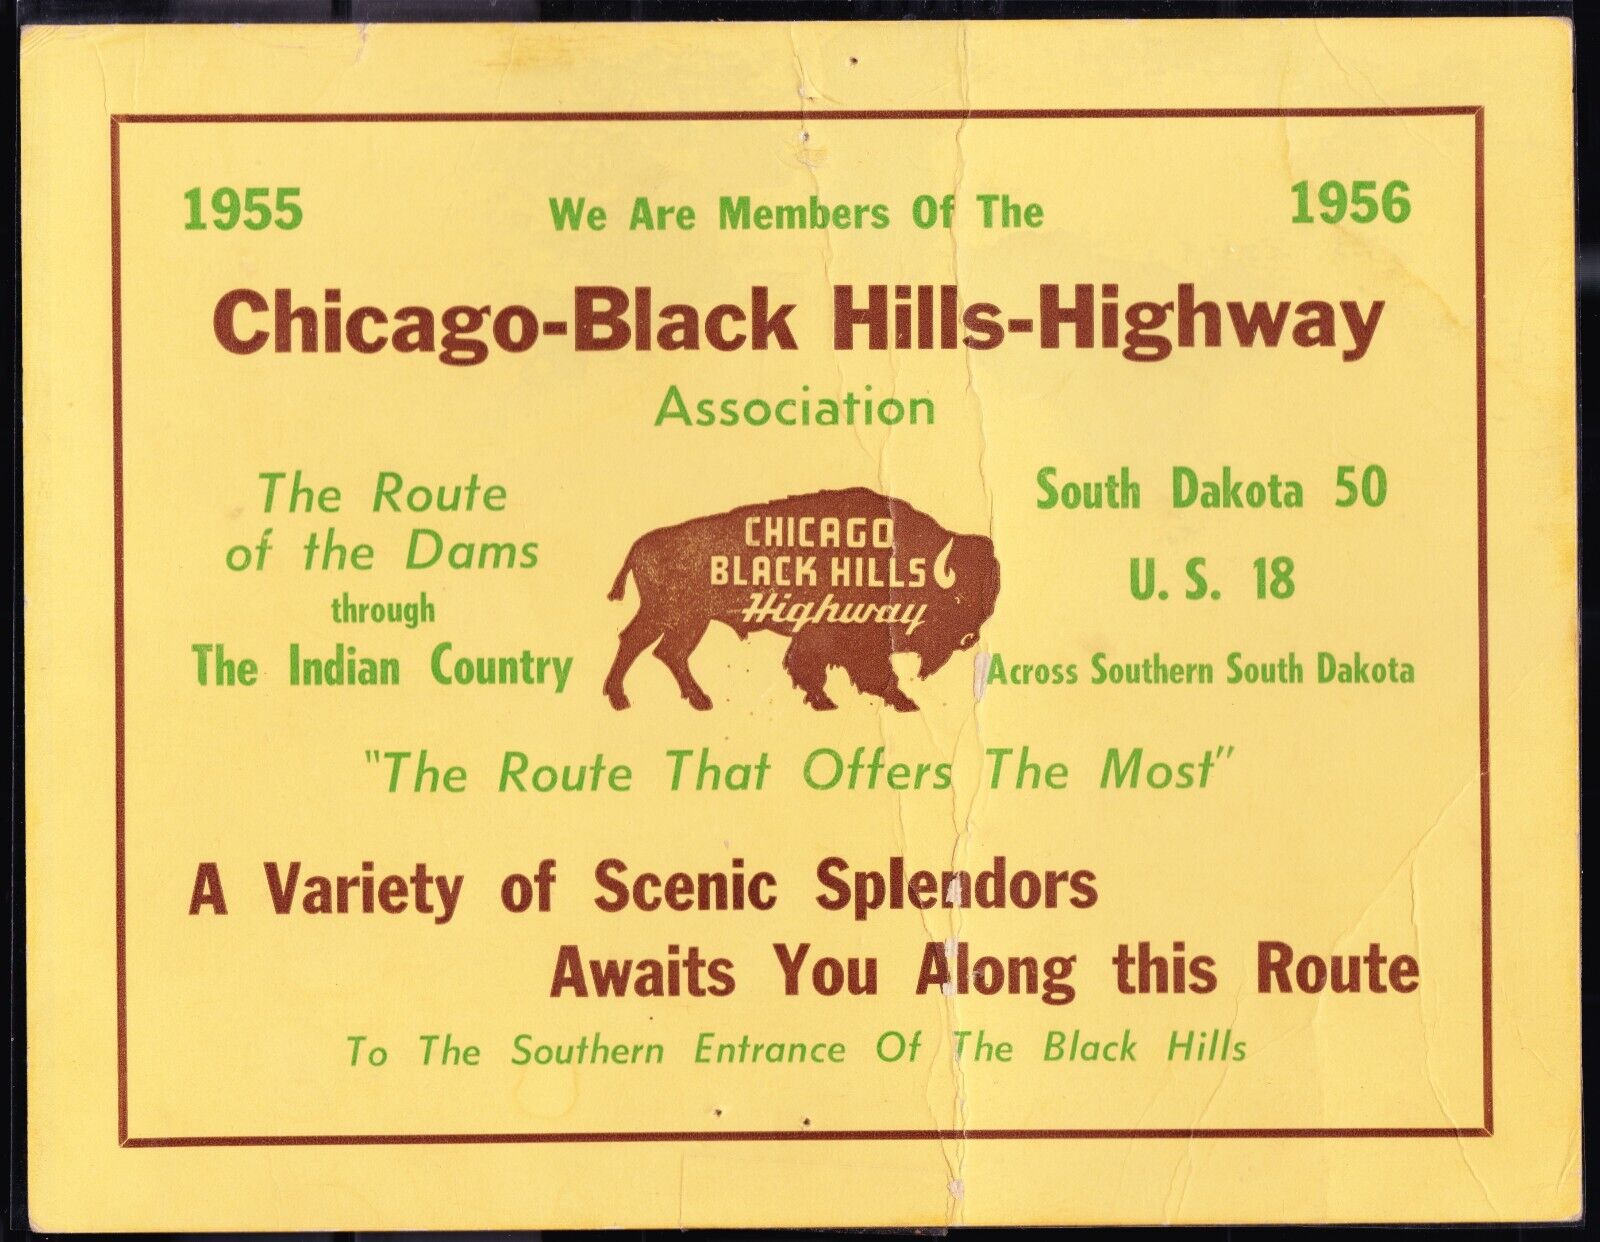 Chicago Black Hills Highway Members Certificate 1955 1956 US Hwy 18 SD 50 & Dams